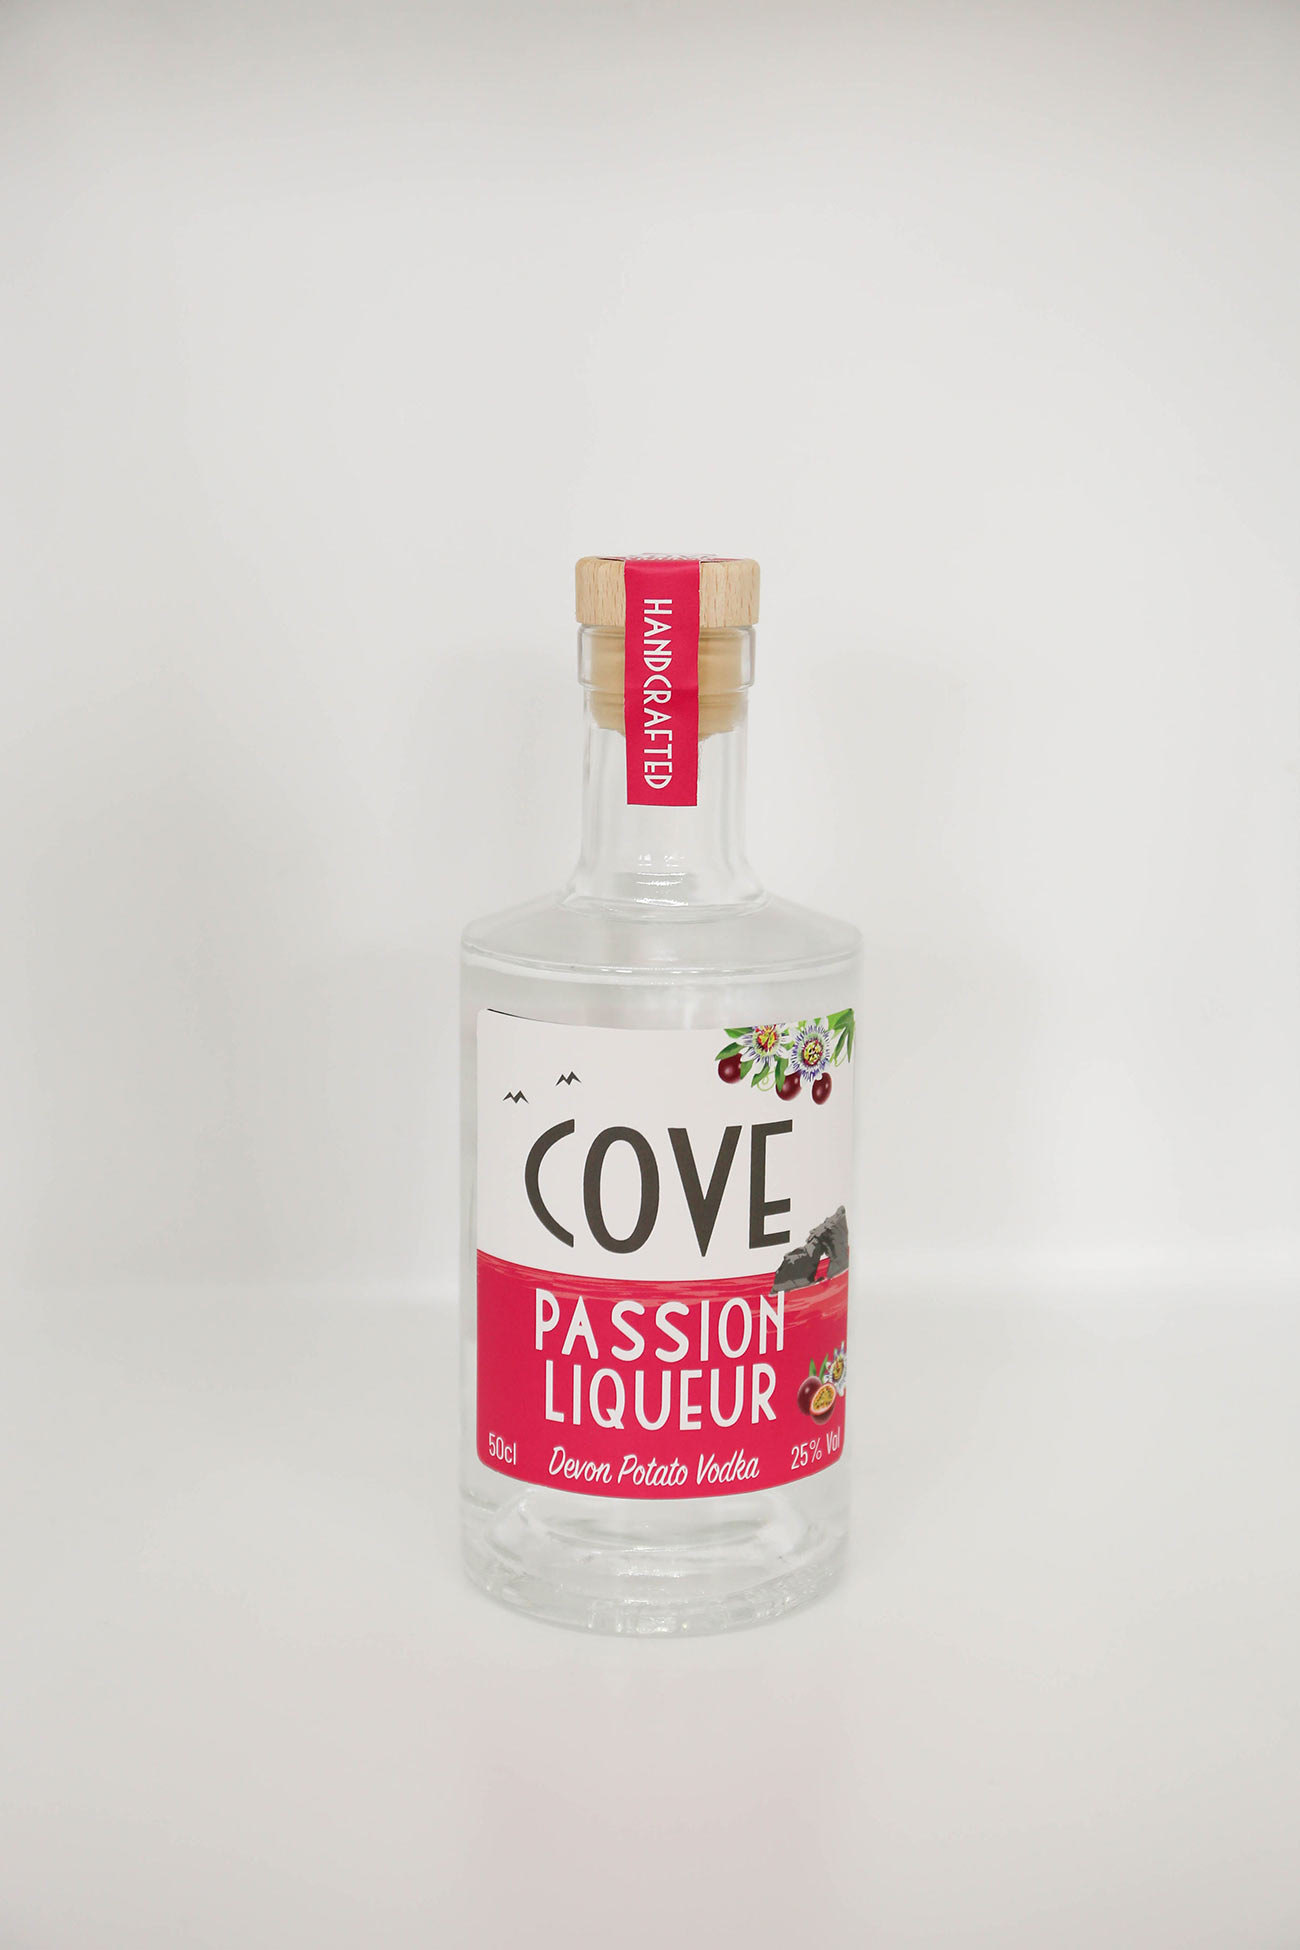 Cove Passion Liqueur Dribks Reception Wed